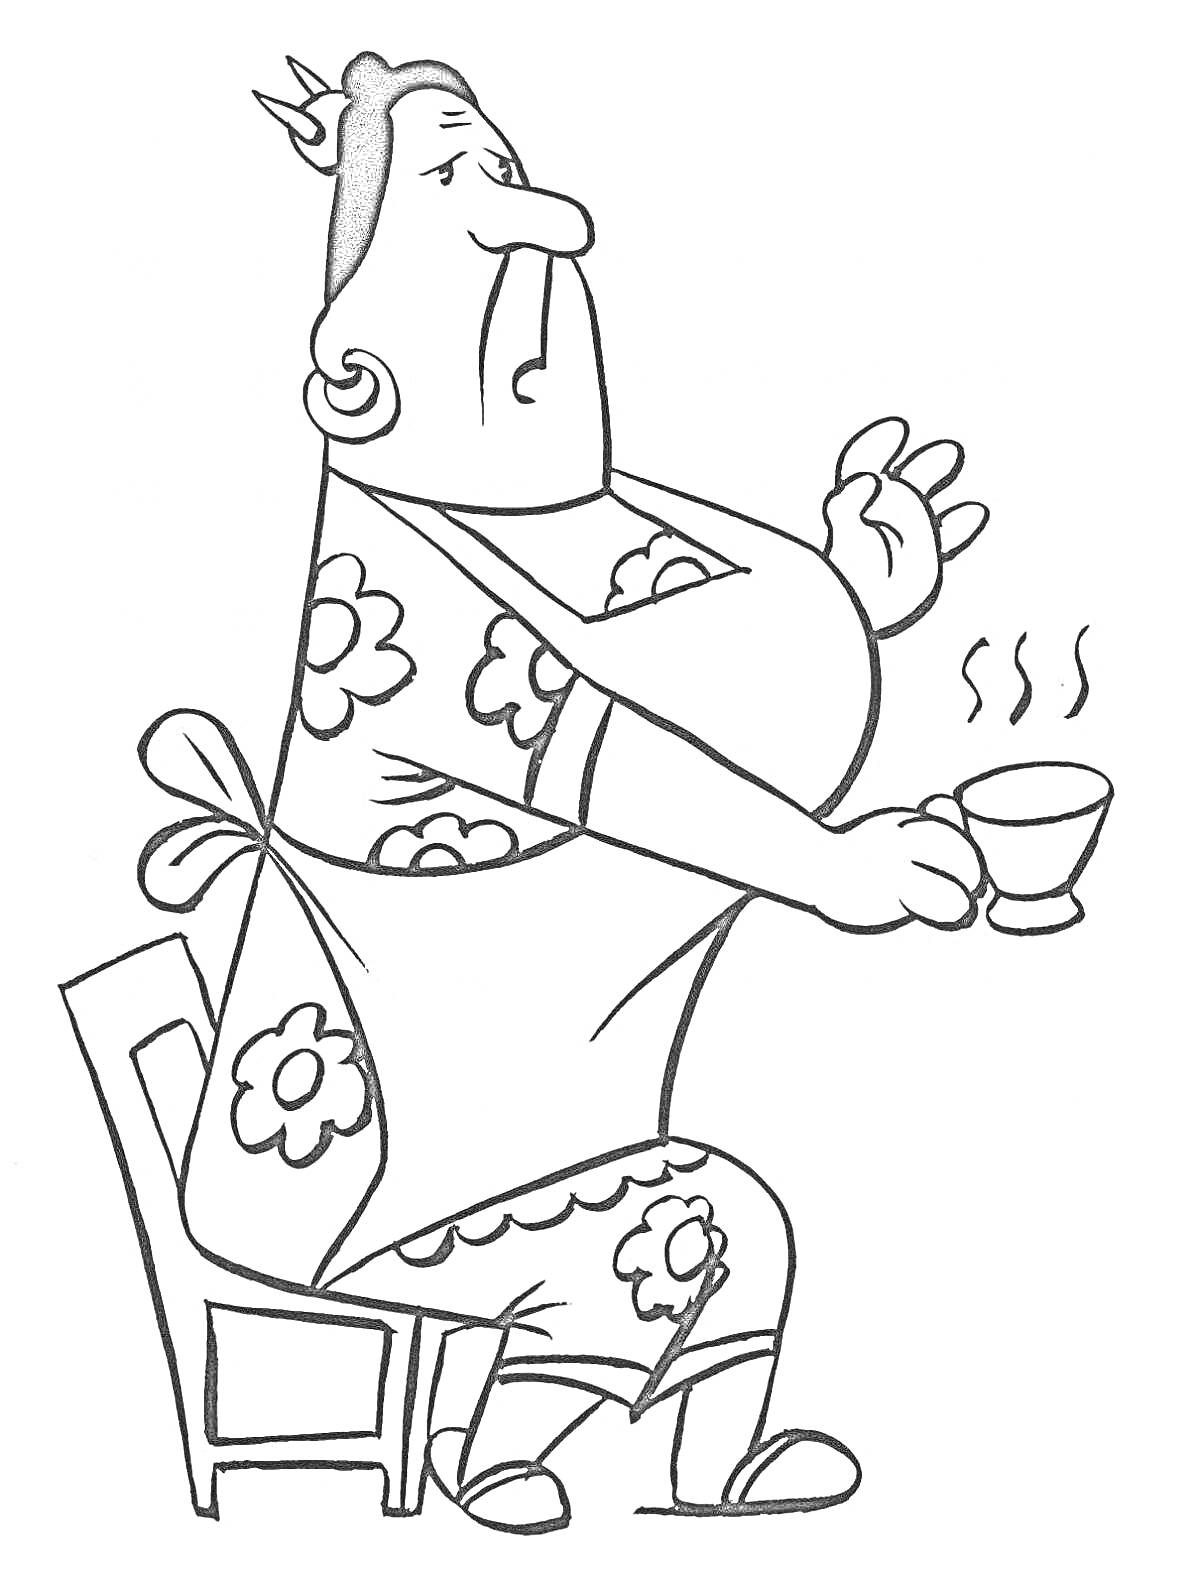 Женщина в платье с цветочным узором сидит на стуле и держит чашку с горячим напитком